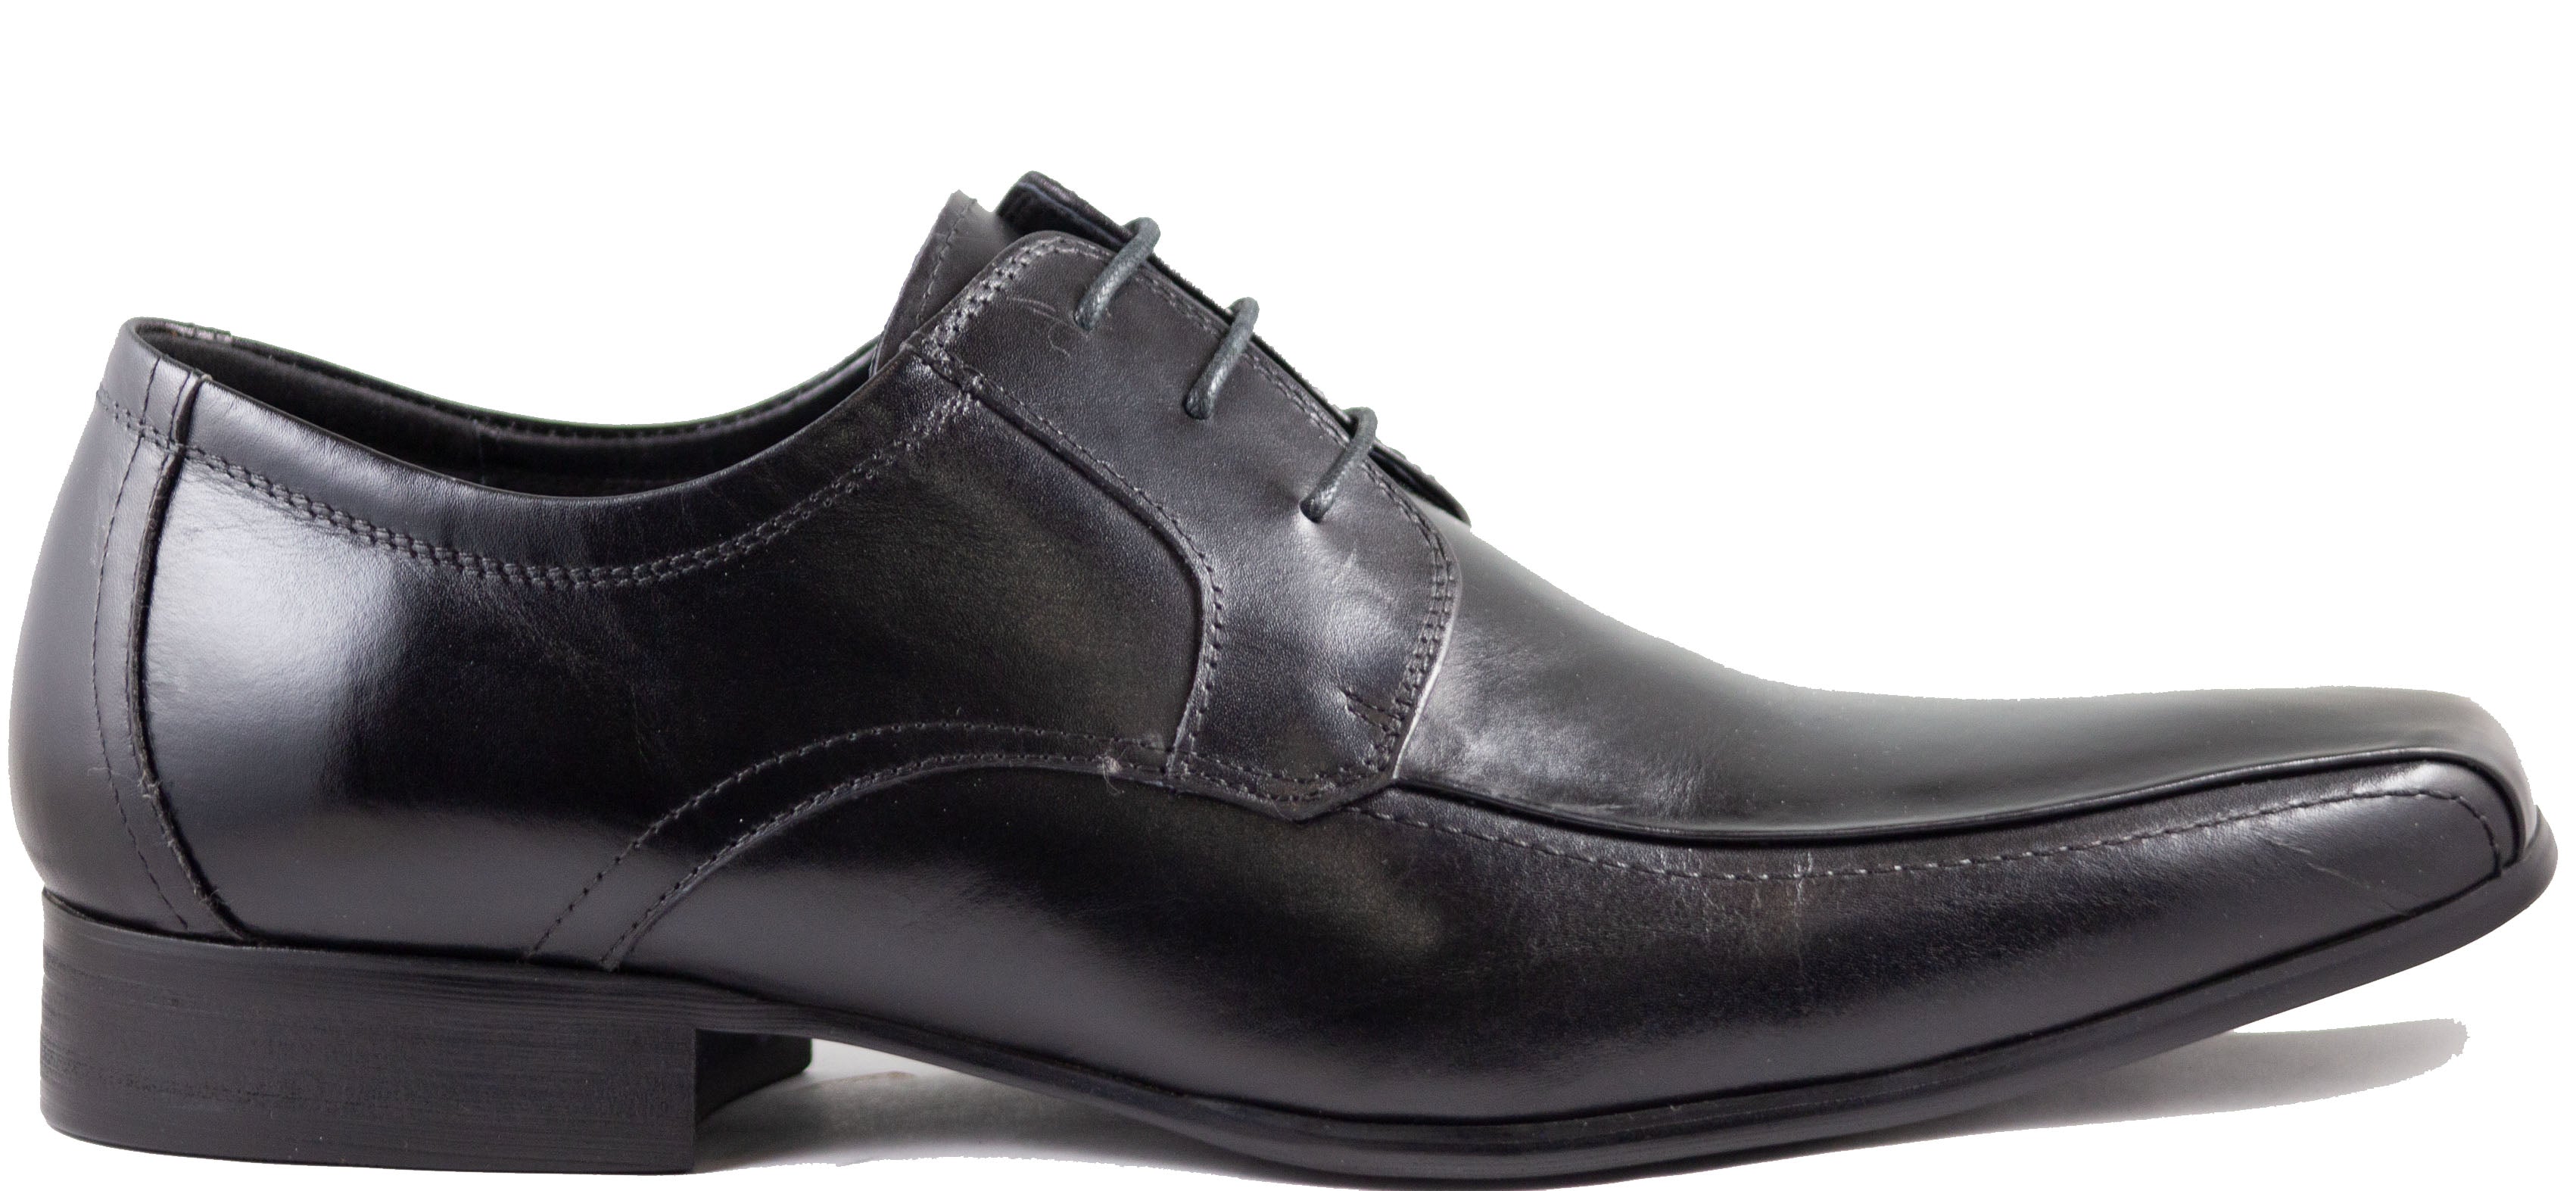 Mario Samello Men's Dress Shoes    C7222-4